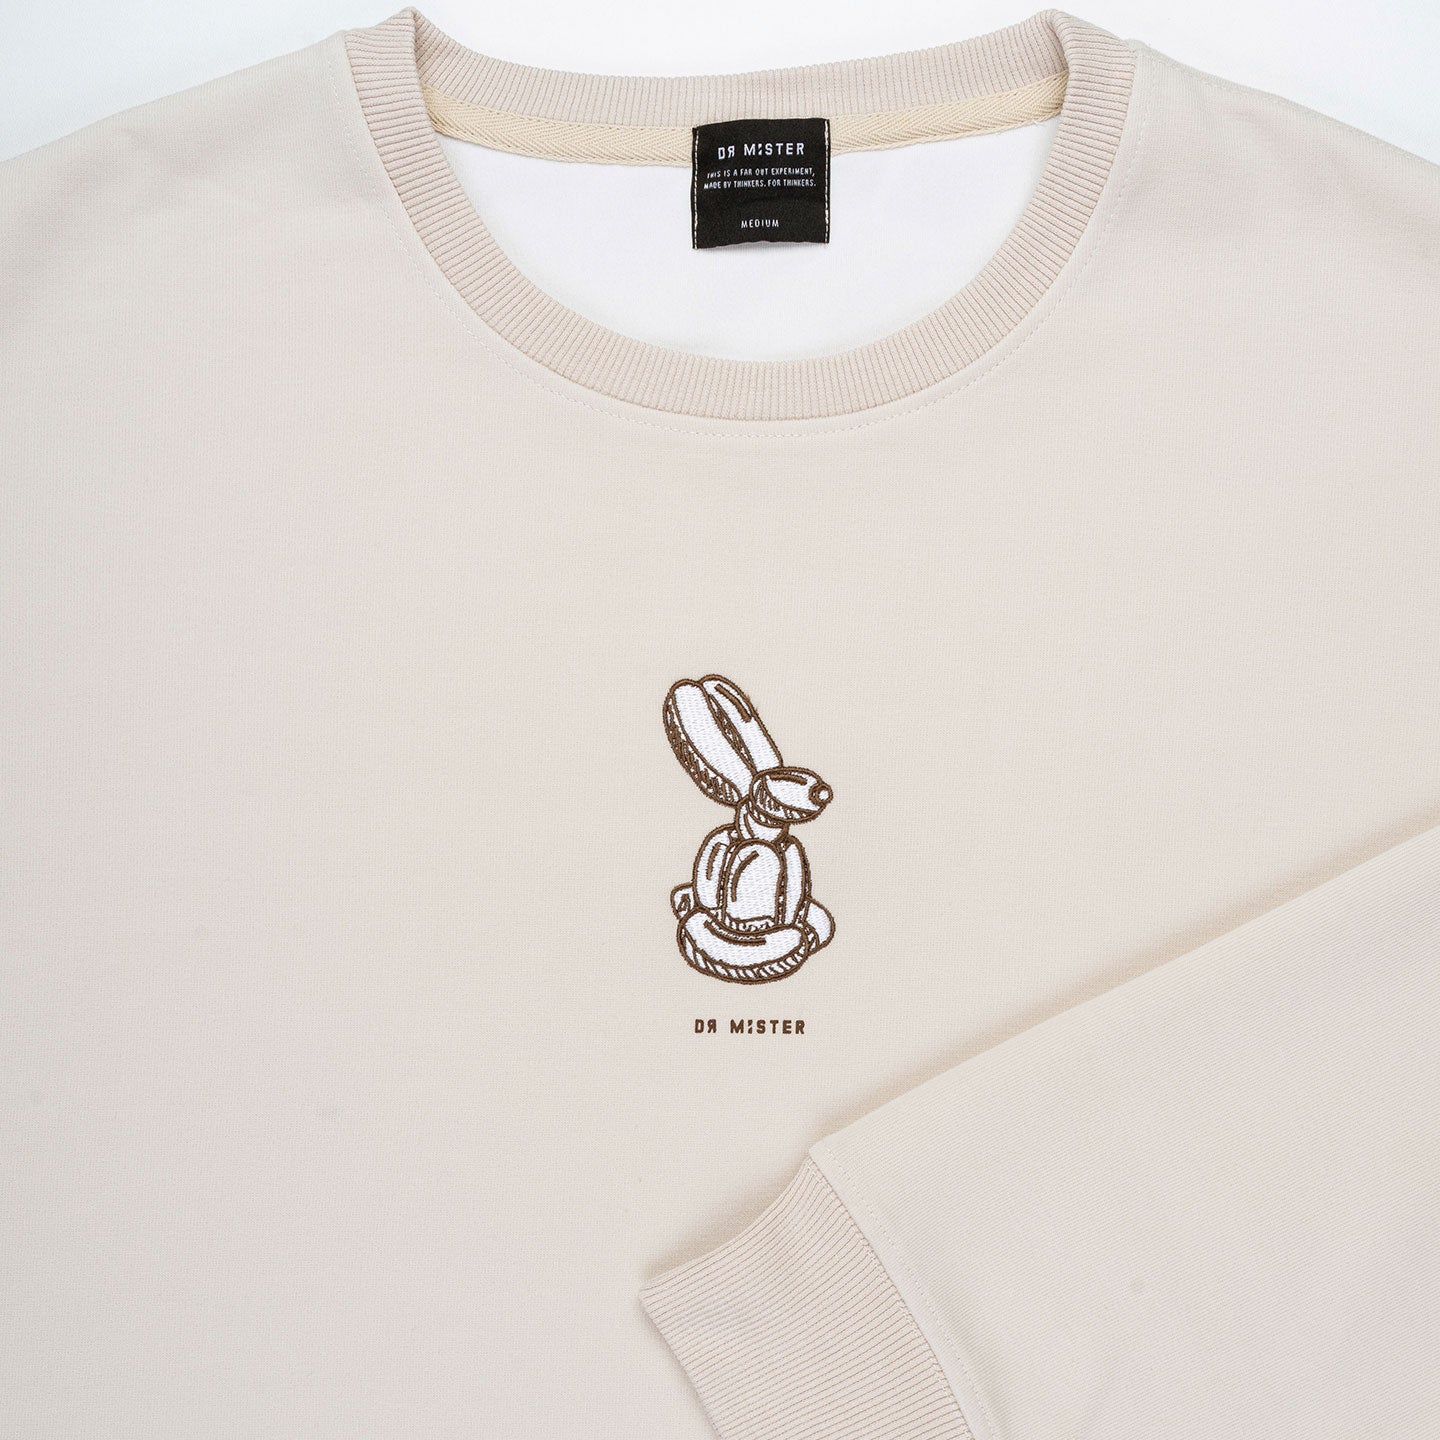 Bunny Sweatshirt -  Ivory